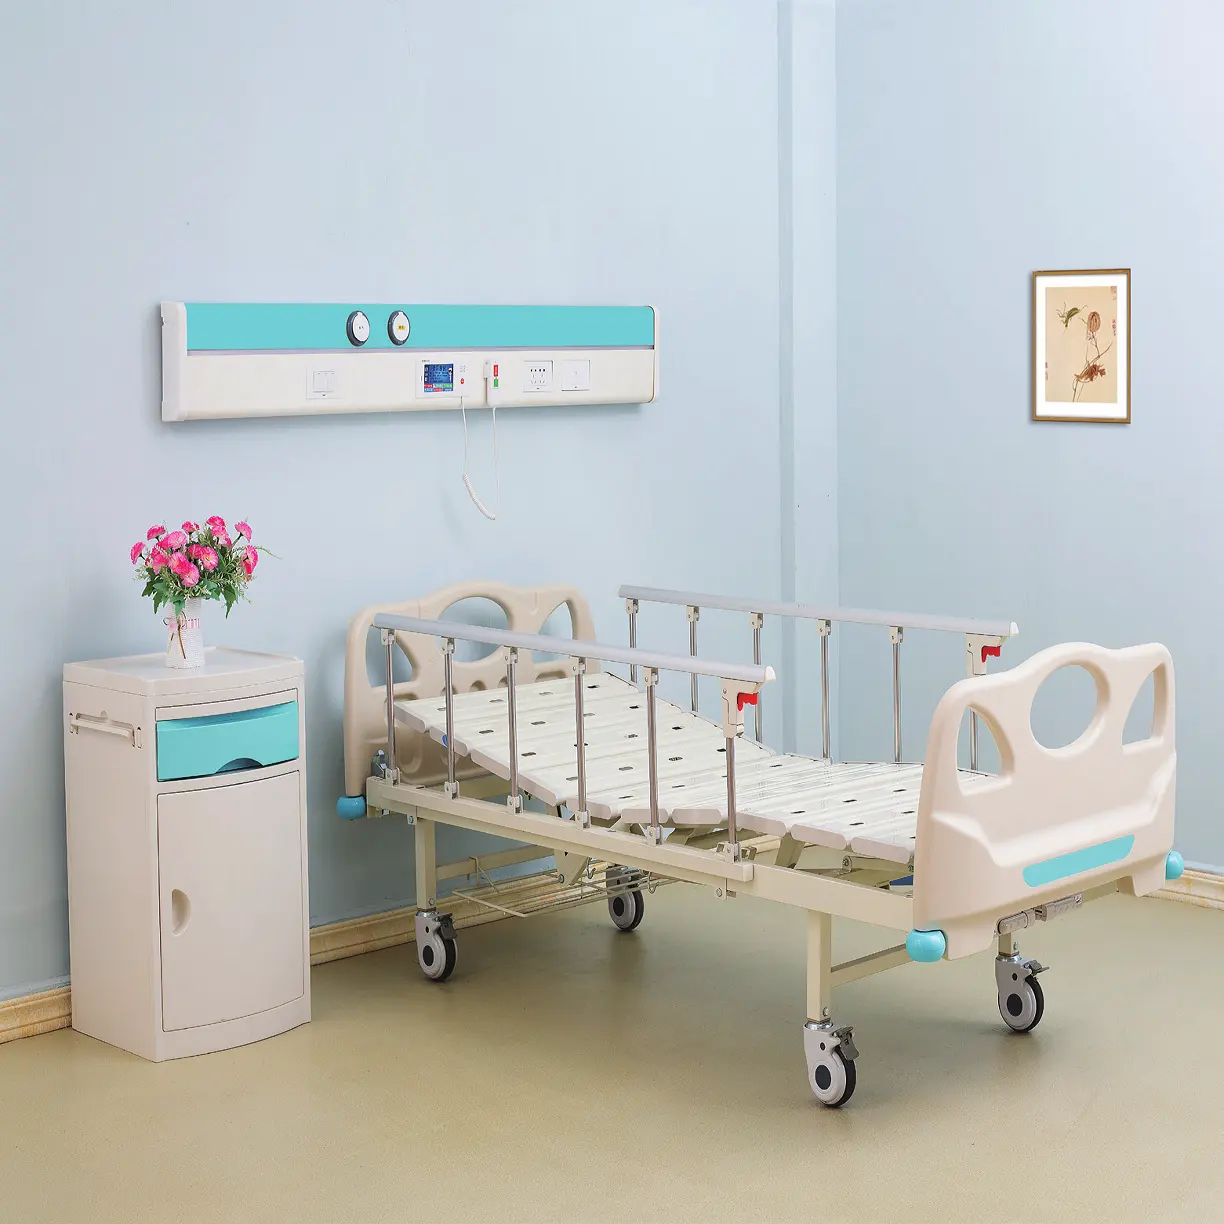 Furnitur rumah sakit, tempat tidur pasien dua fungsi ruang perawatan medis ICU 2 engkol tempat tidur rumah sakit Manual untuk pasien